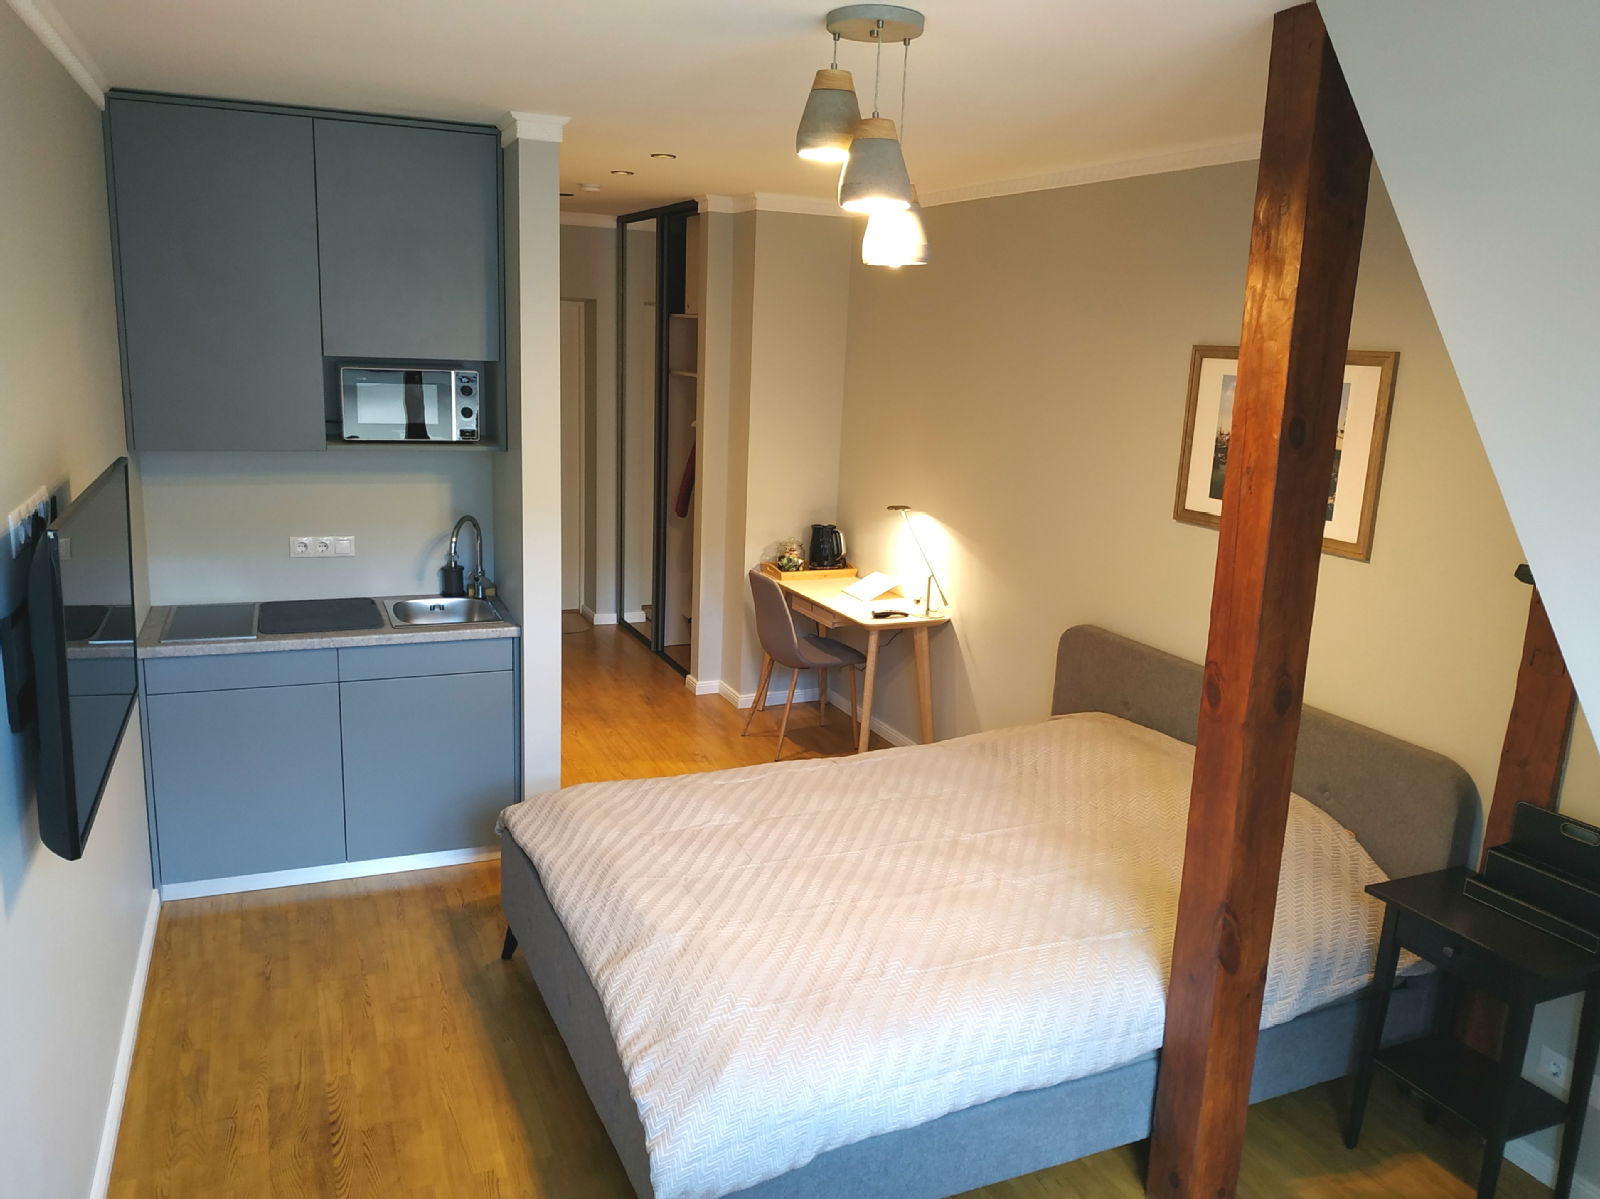 12 stilīgi Airbnb tipa dzīvokļi, kuri tagad pieejami arī ilgtermiņā - Nekustamo īpašumu ziņas - City24.lv nekustamo īpašumu sludinājumu portāls